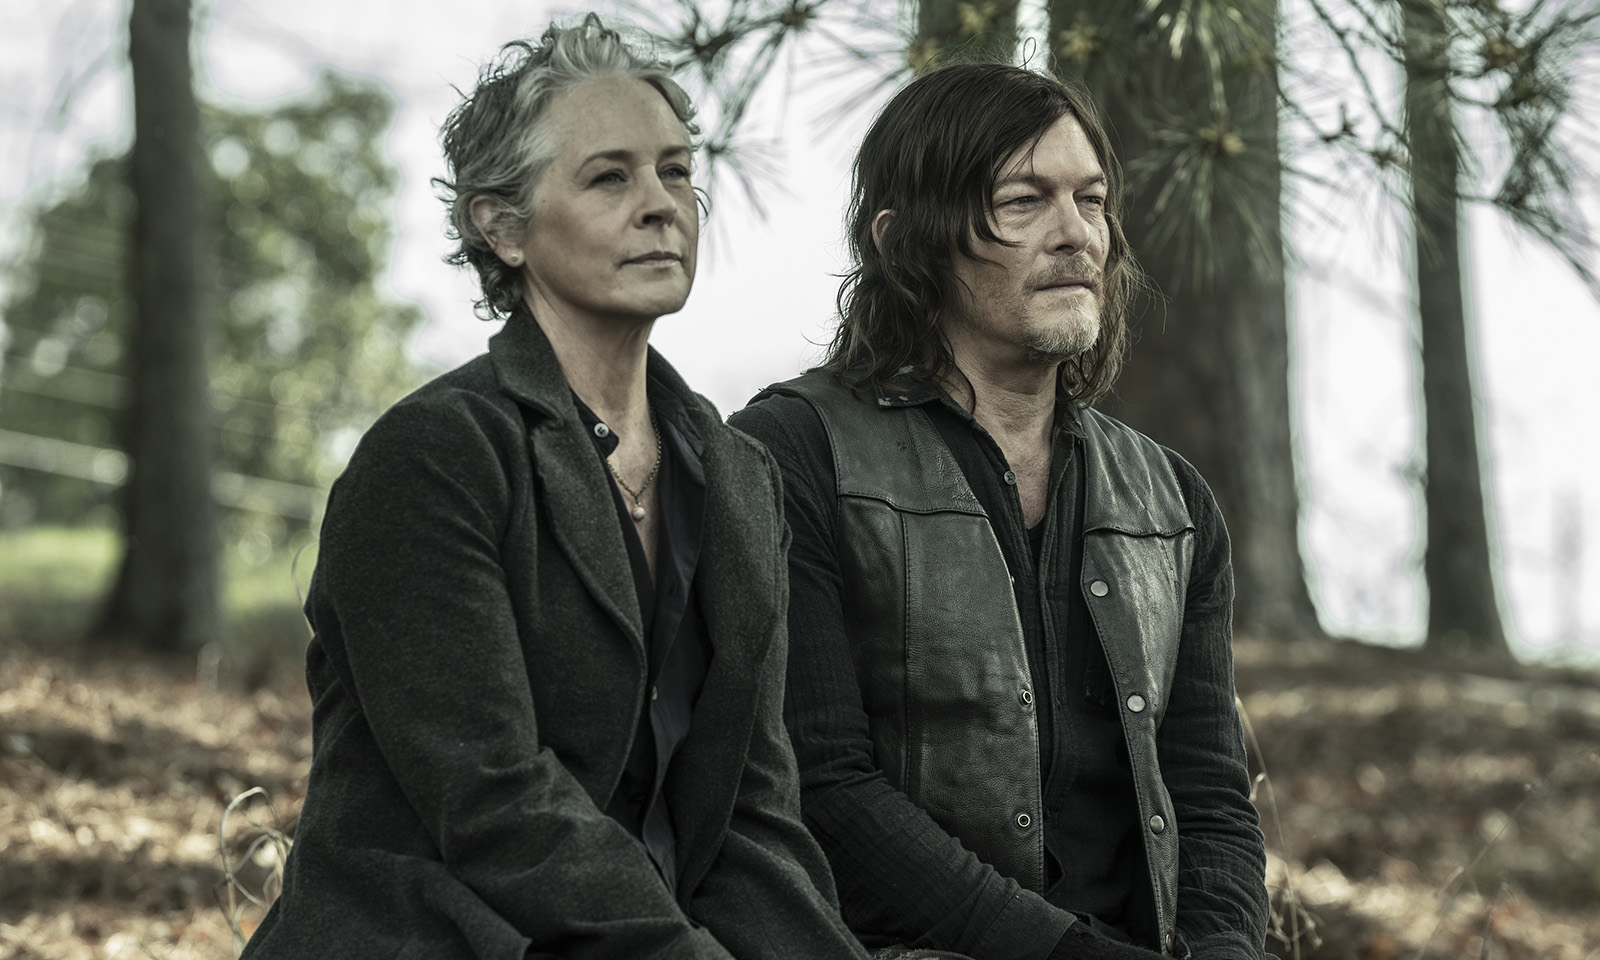 Carol e Daryl sentados conversando em cena do último episódio de The Walking Dead.